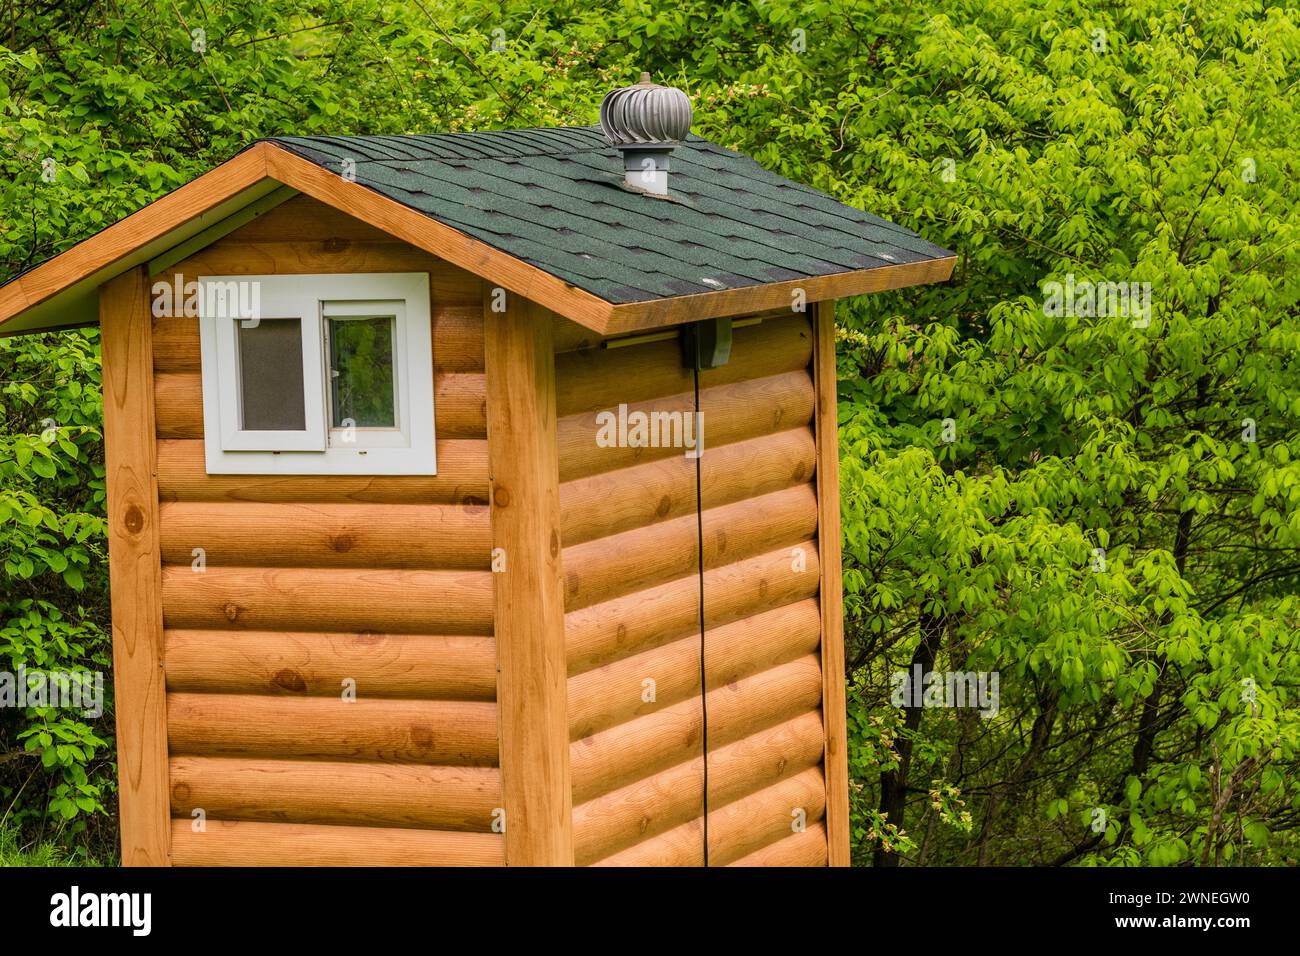 Servizi igienici pubblici costruiti per sembrare una piccola capanna di legno situata in un parco boschivo con lussureggiante vegetazione da qualche parte in Corea del Sud Foto Stock